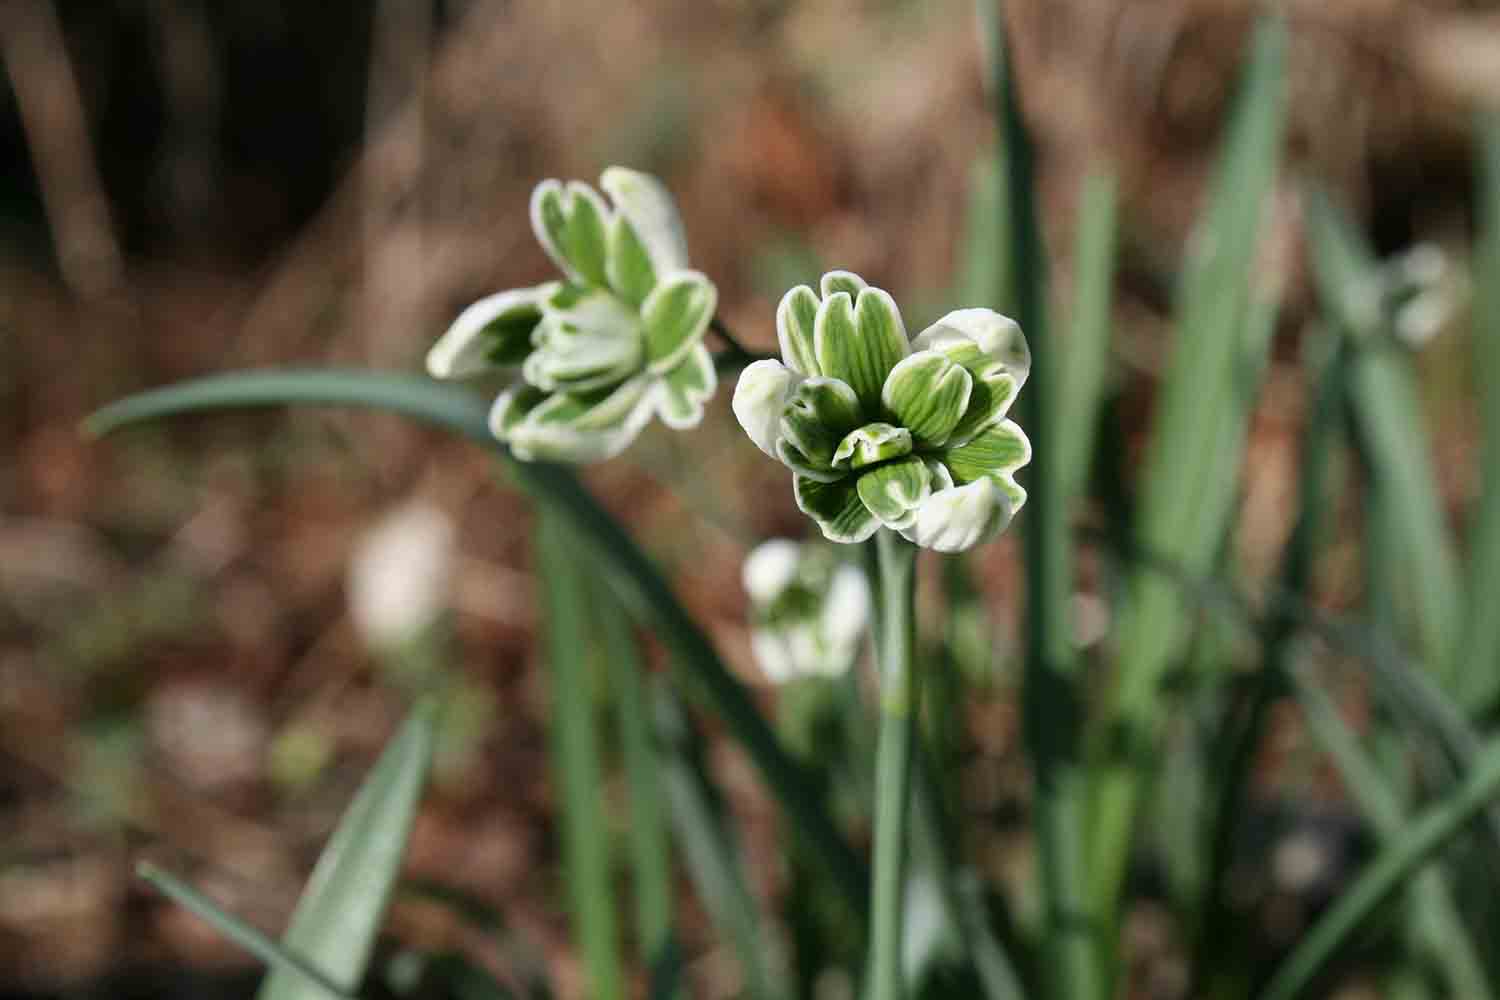 Ein doppeltes Schneeglöckchen dessen Blüten fast immer nach oben zeigen ist Galanthus nivalis ' Blewbury Tart '. Es wird aufgrund seiner Blütenstellung als abnormales Doppeltes bezeichnet.